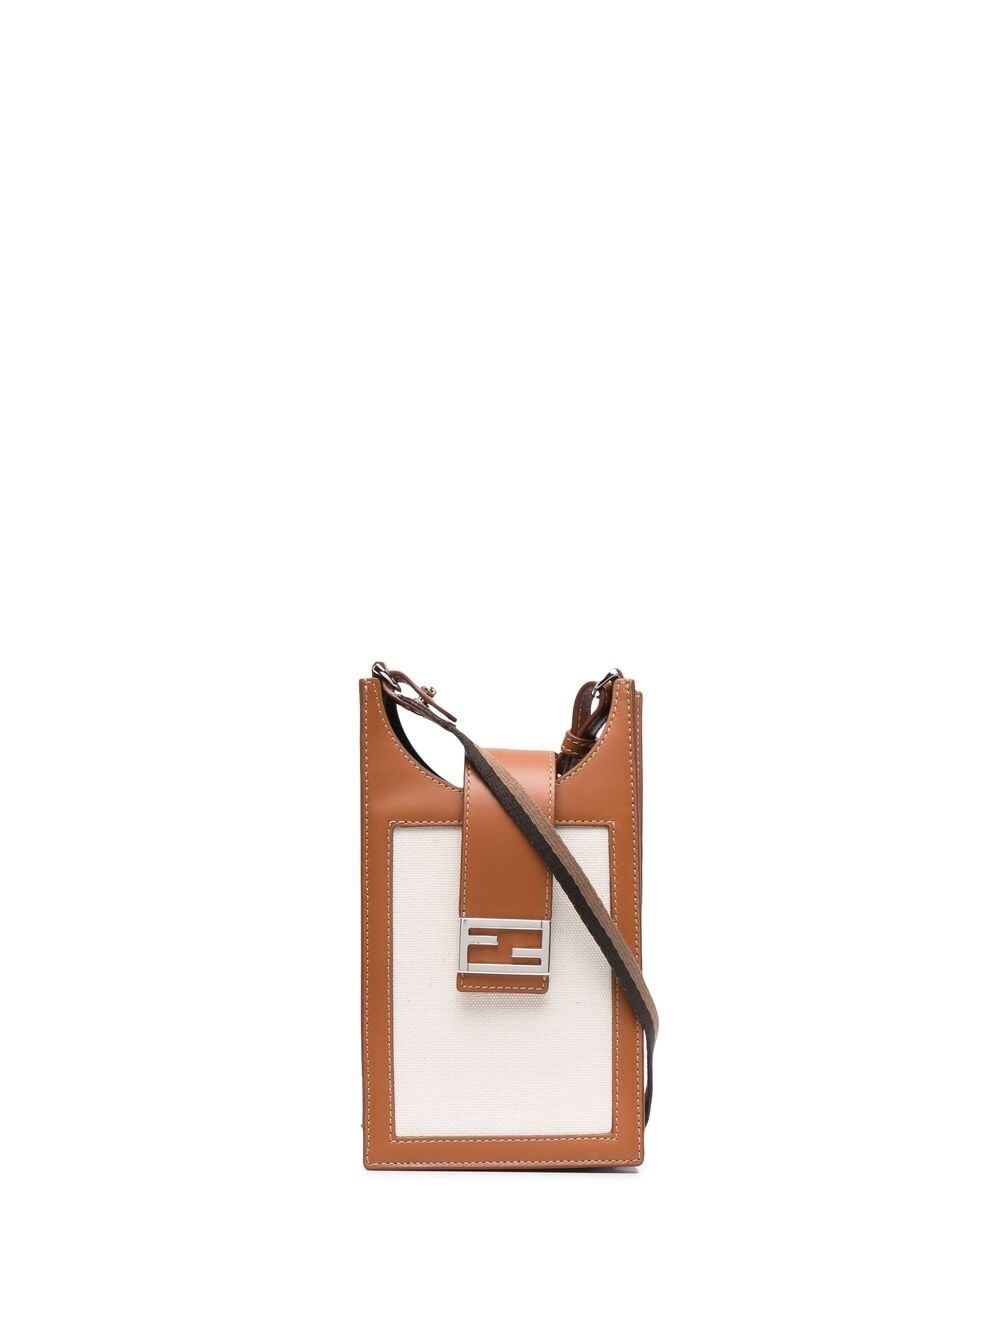 фото Fendi сумка для телефона flat baguette